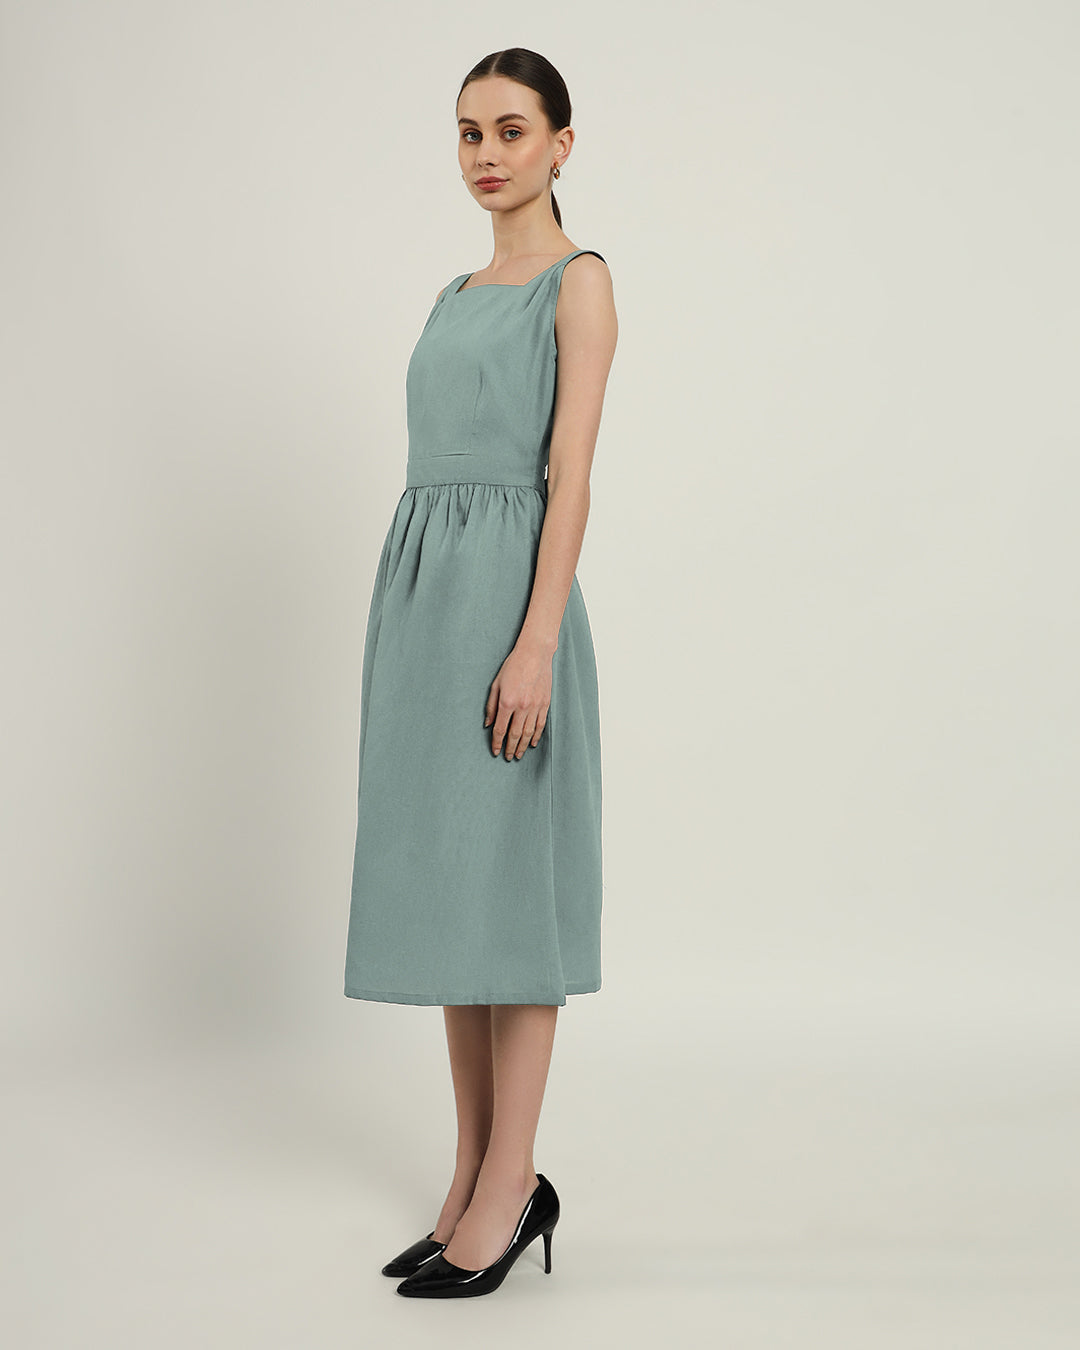 The Mihara Daisy Carolina Linen Dress